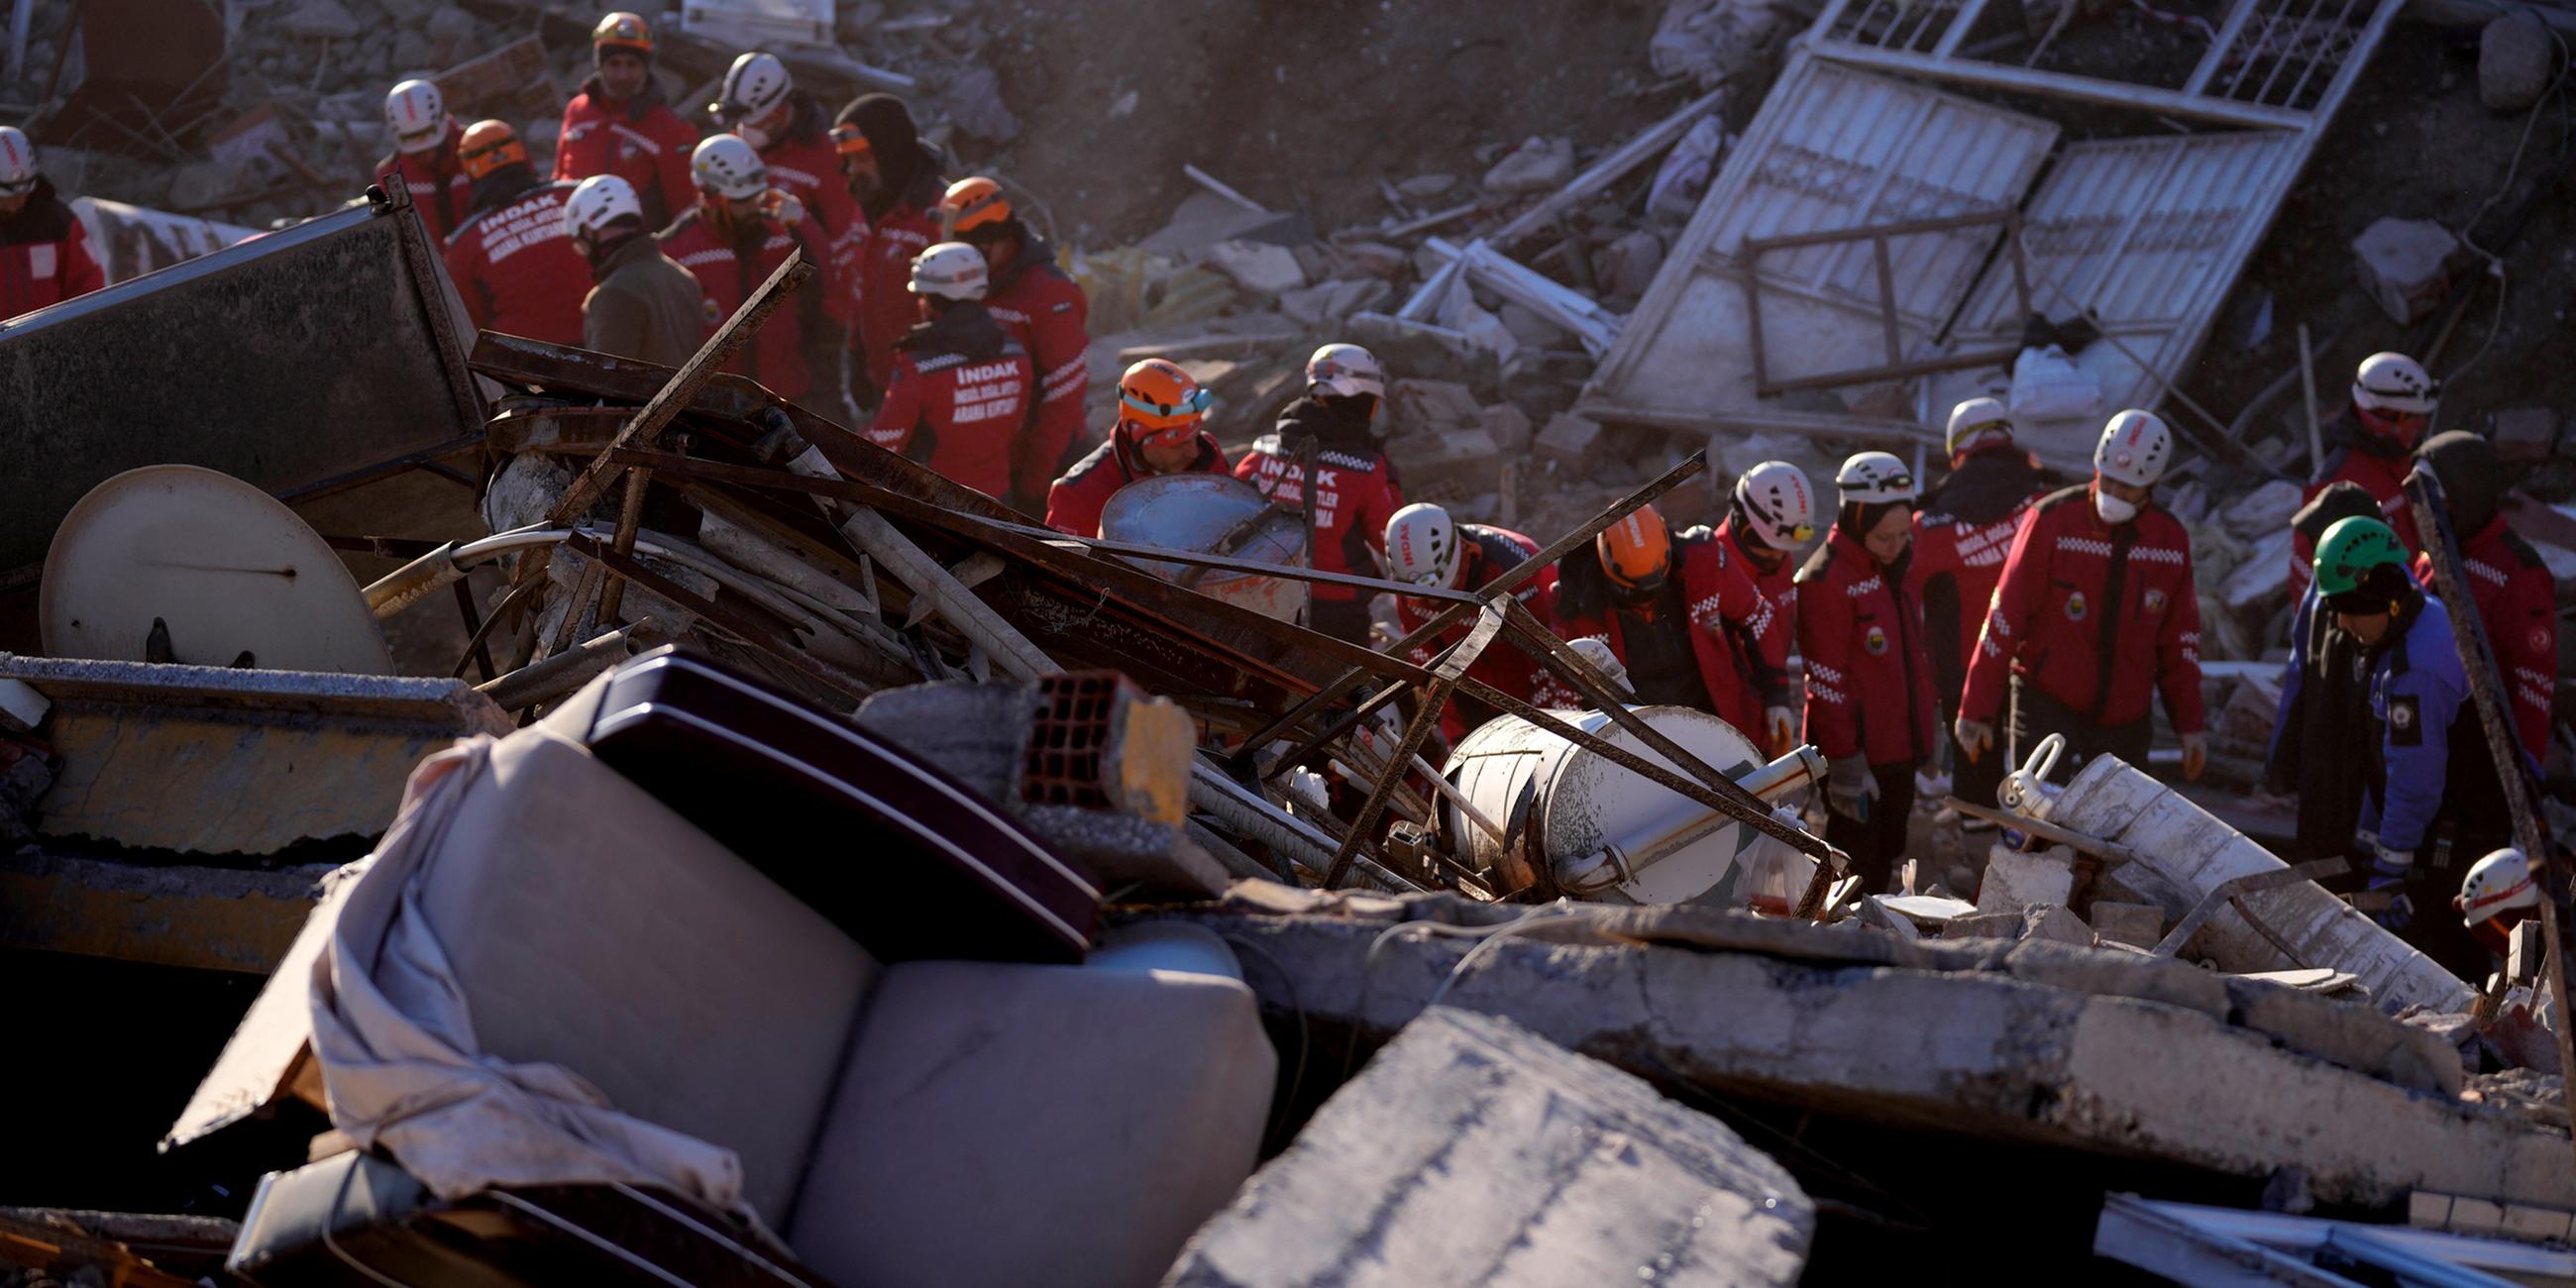 Rettungskräfte durchsuchen die Trümmer eines zerstörten Gebäudes nach Überlebenden. 